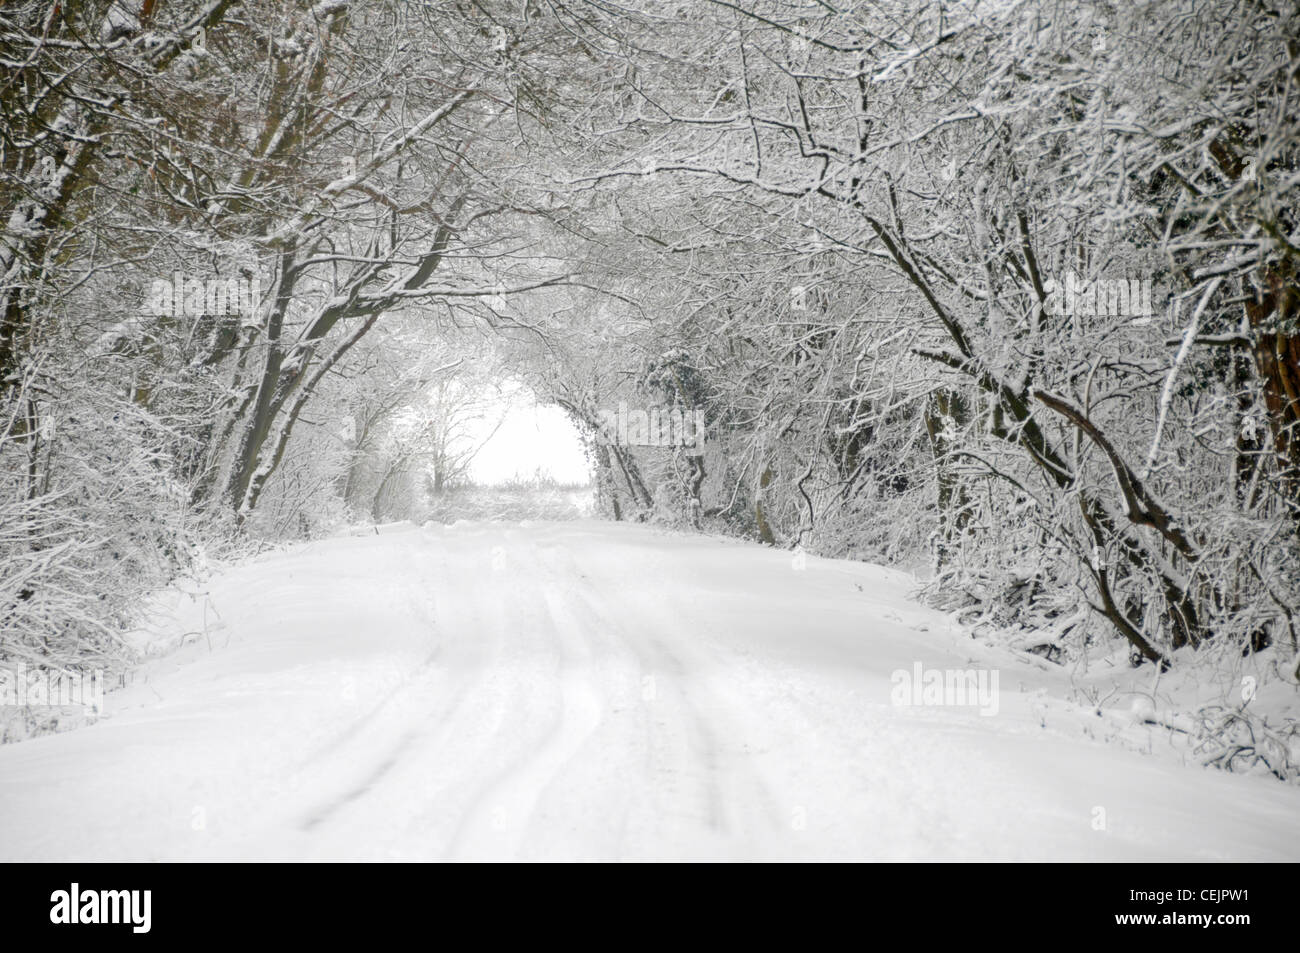 Neige scène météo étroite route de campagne après la neige en dessous Tunnel d'arbres enneigés dans le pays des merveilles d'hiver Brentwood Essex Angleterre Royaume-Uni Banque D'Images